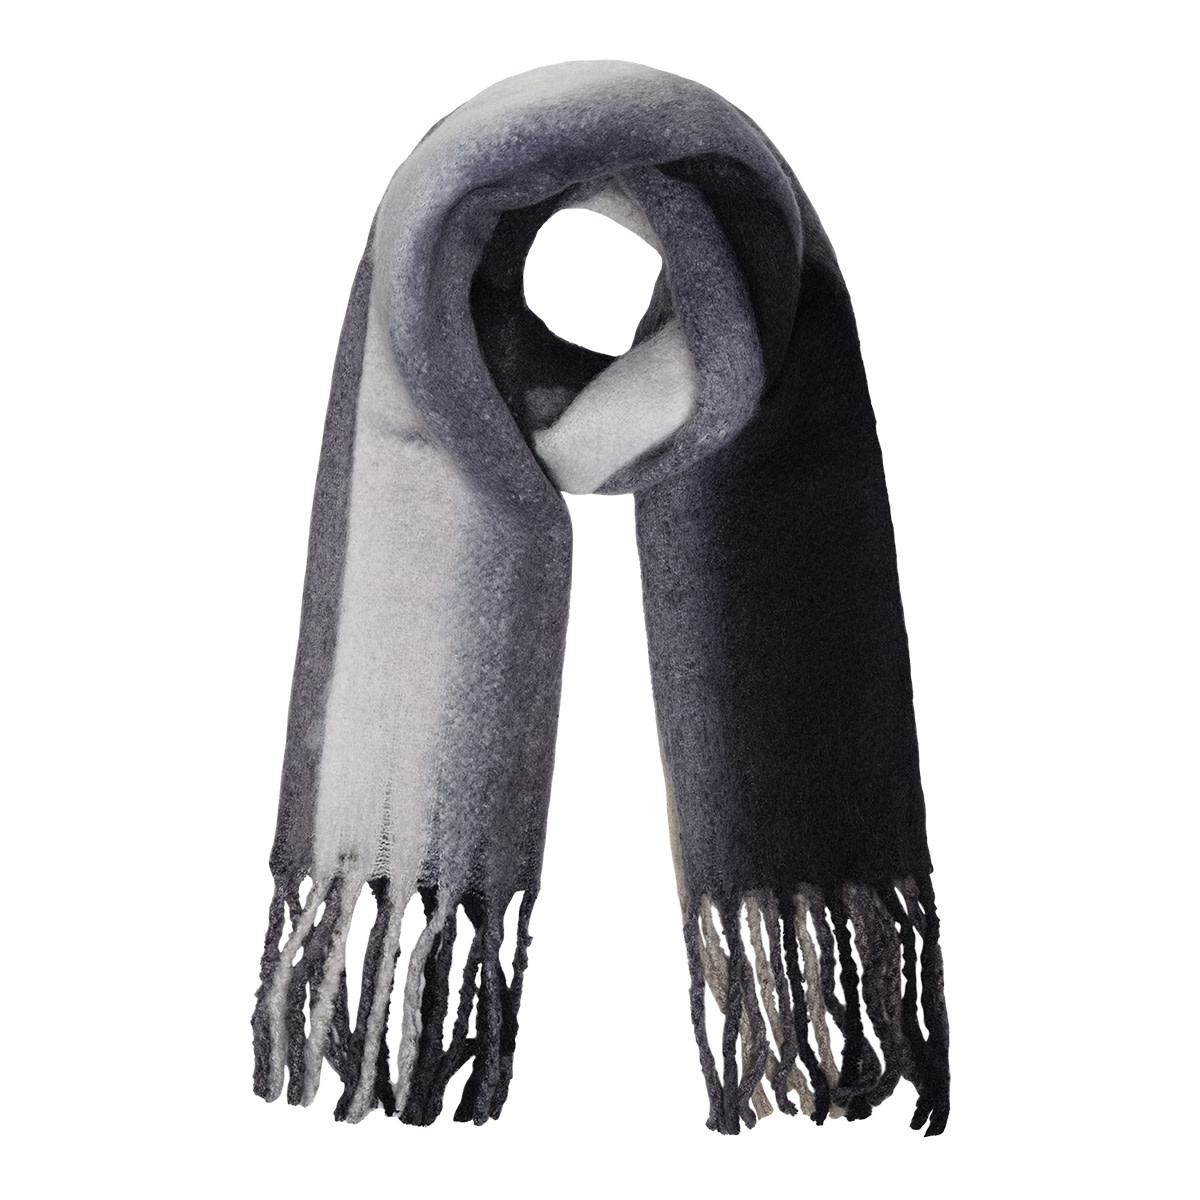 Tomaat naaimachine luchthaven Sjaal verticale kleuren ecru/grijs/zwart - Made by e l l e n